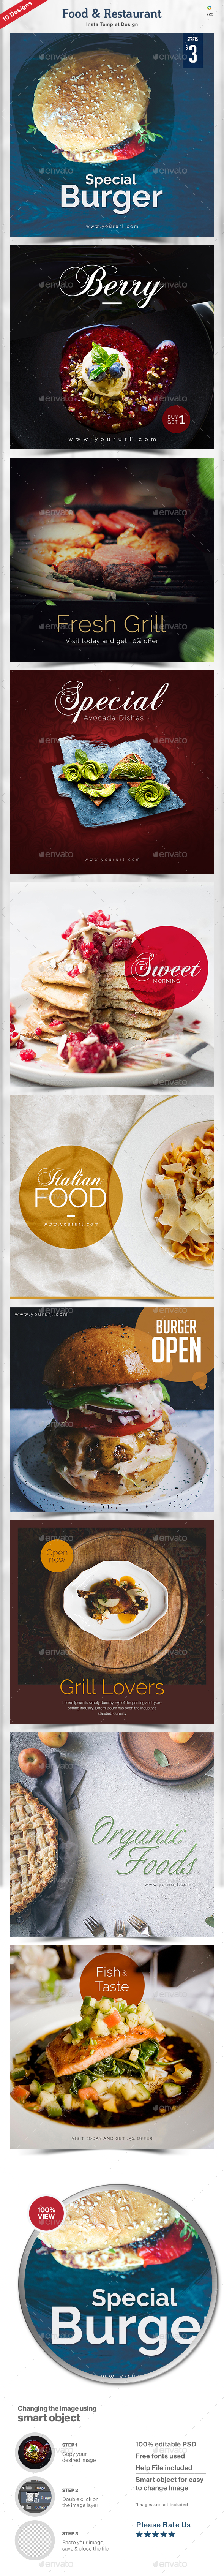 قالب های اینستاگرام غذا و رستوران - 10 طرح